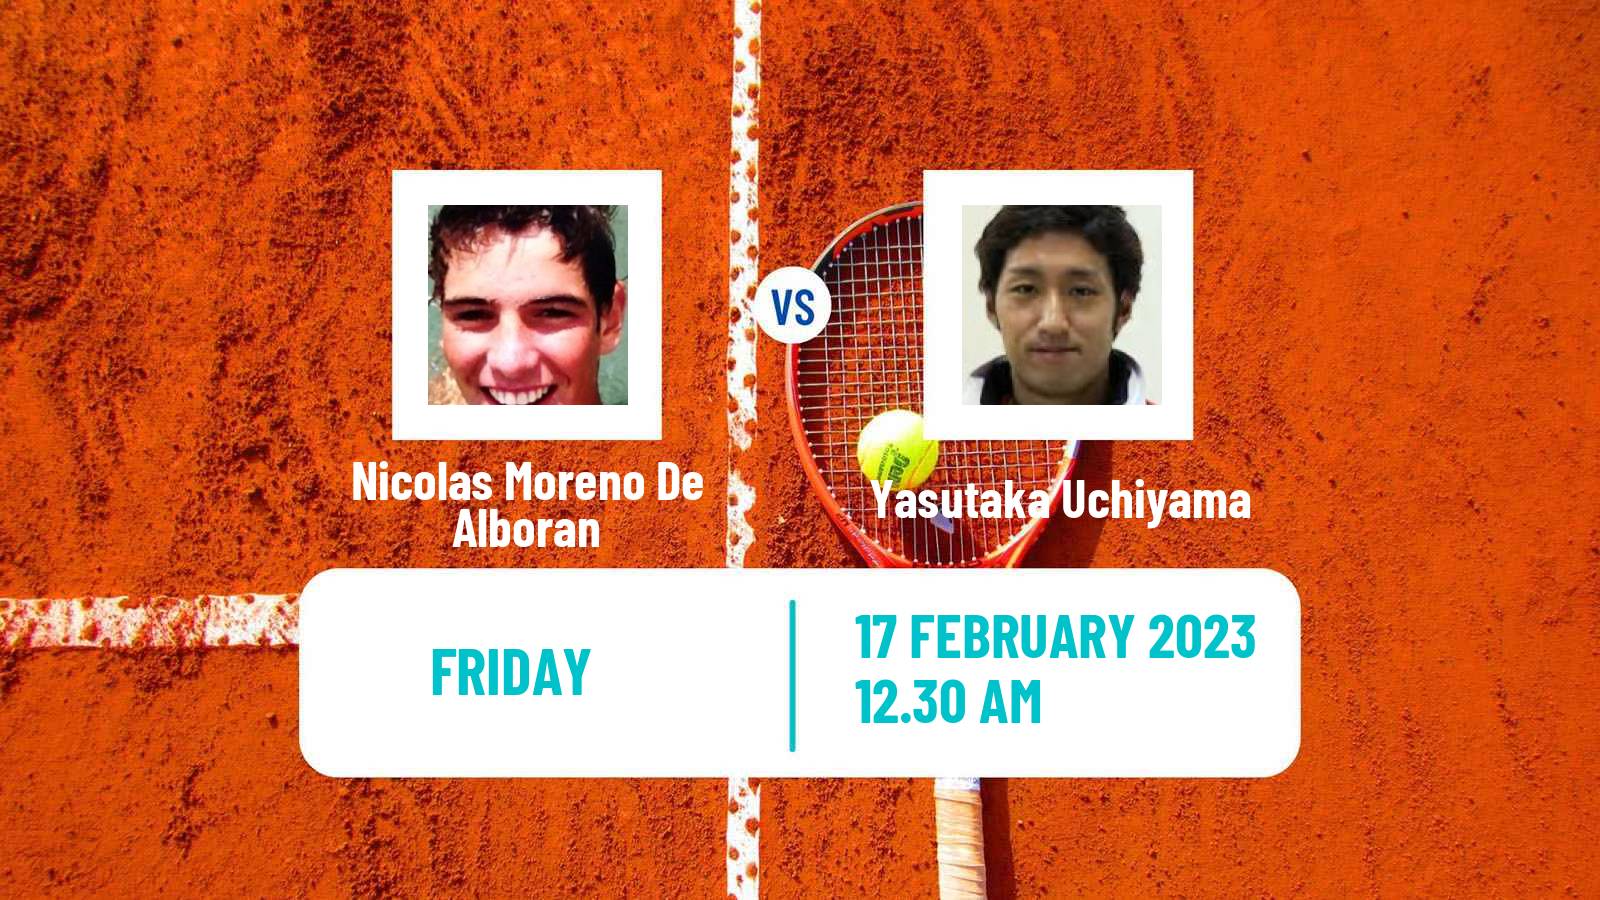 Tennis ATP Challenger Nicolas Moreno De Alboran - Yasutaka Uchiyama